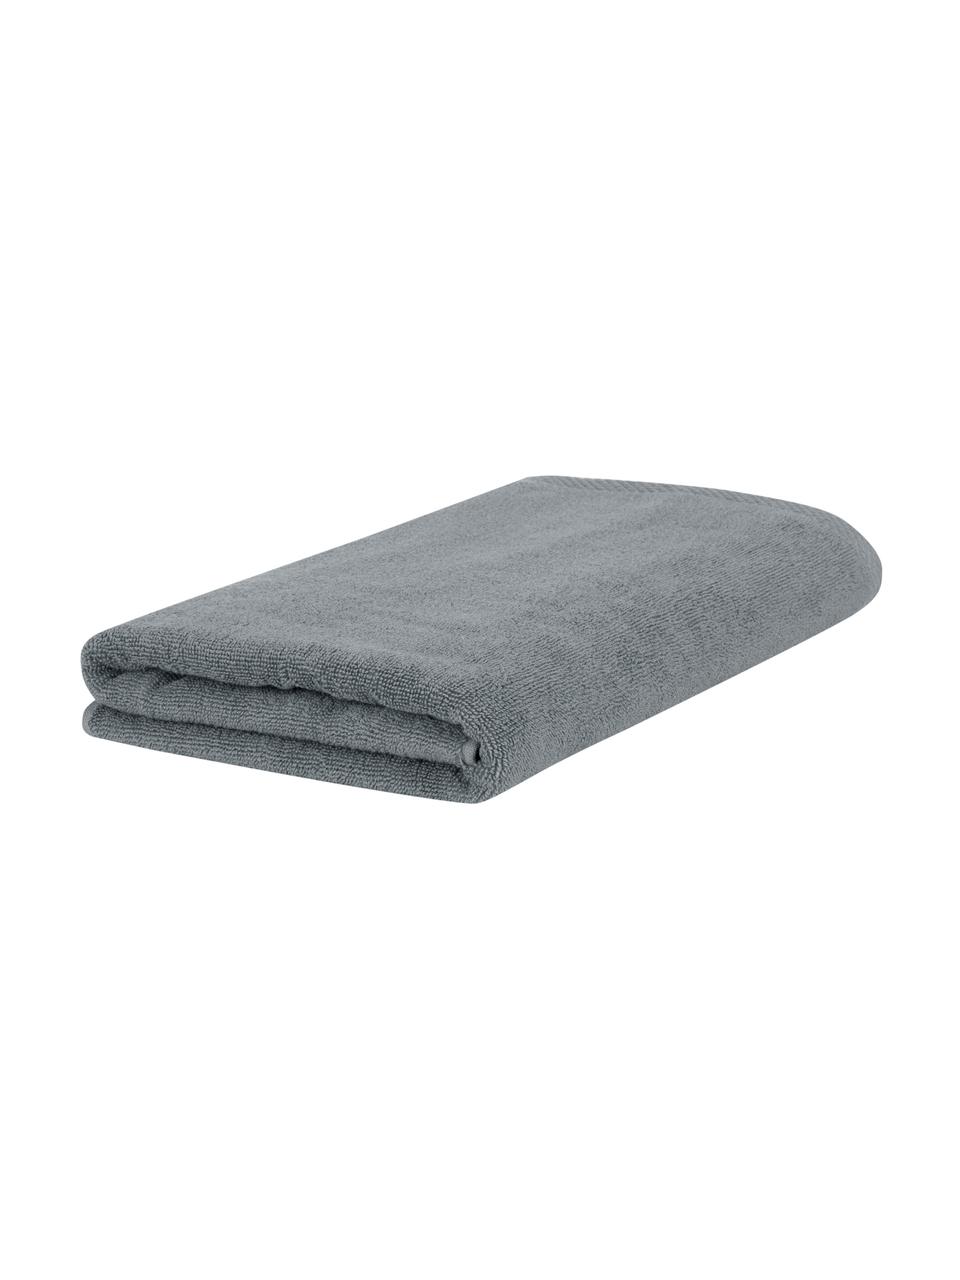 Eenkleurige handdoek Comfort, verschillende formaten, Donkergrijs, Handdoek, B 50 x L 100 cm, 2 stuks